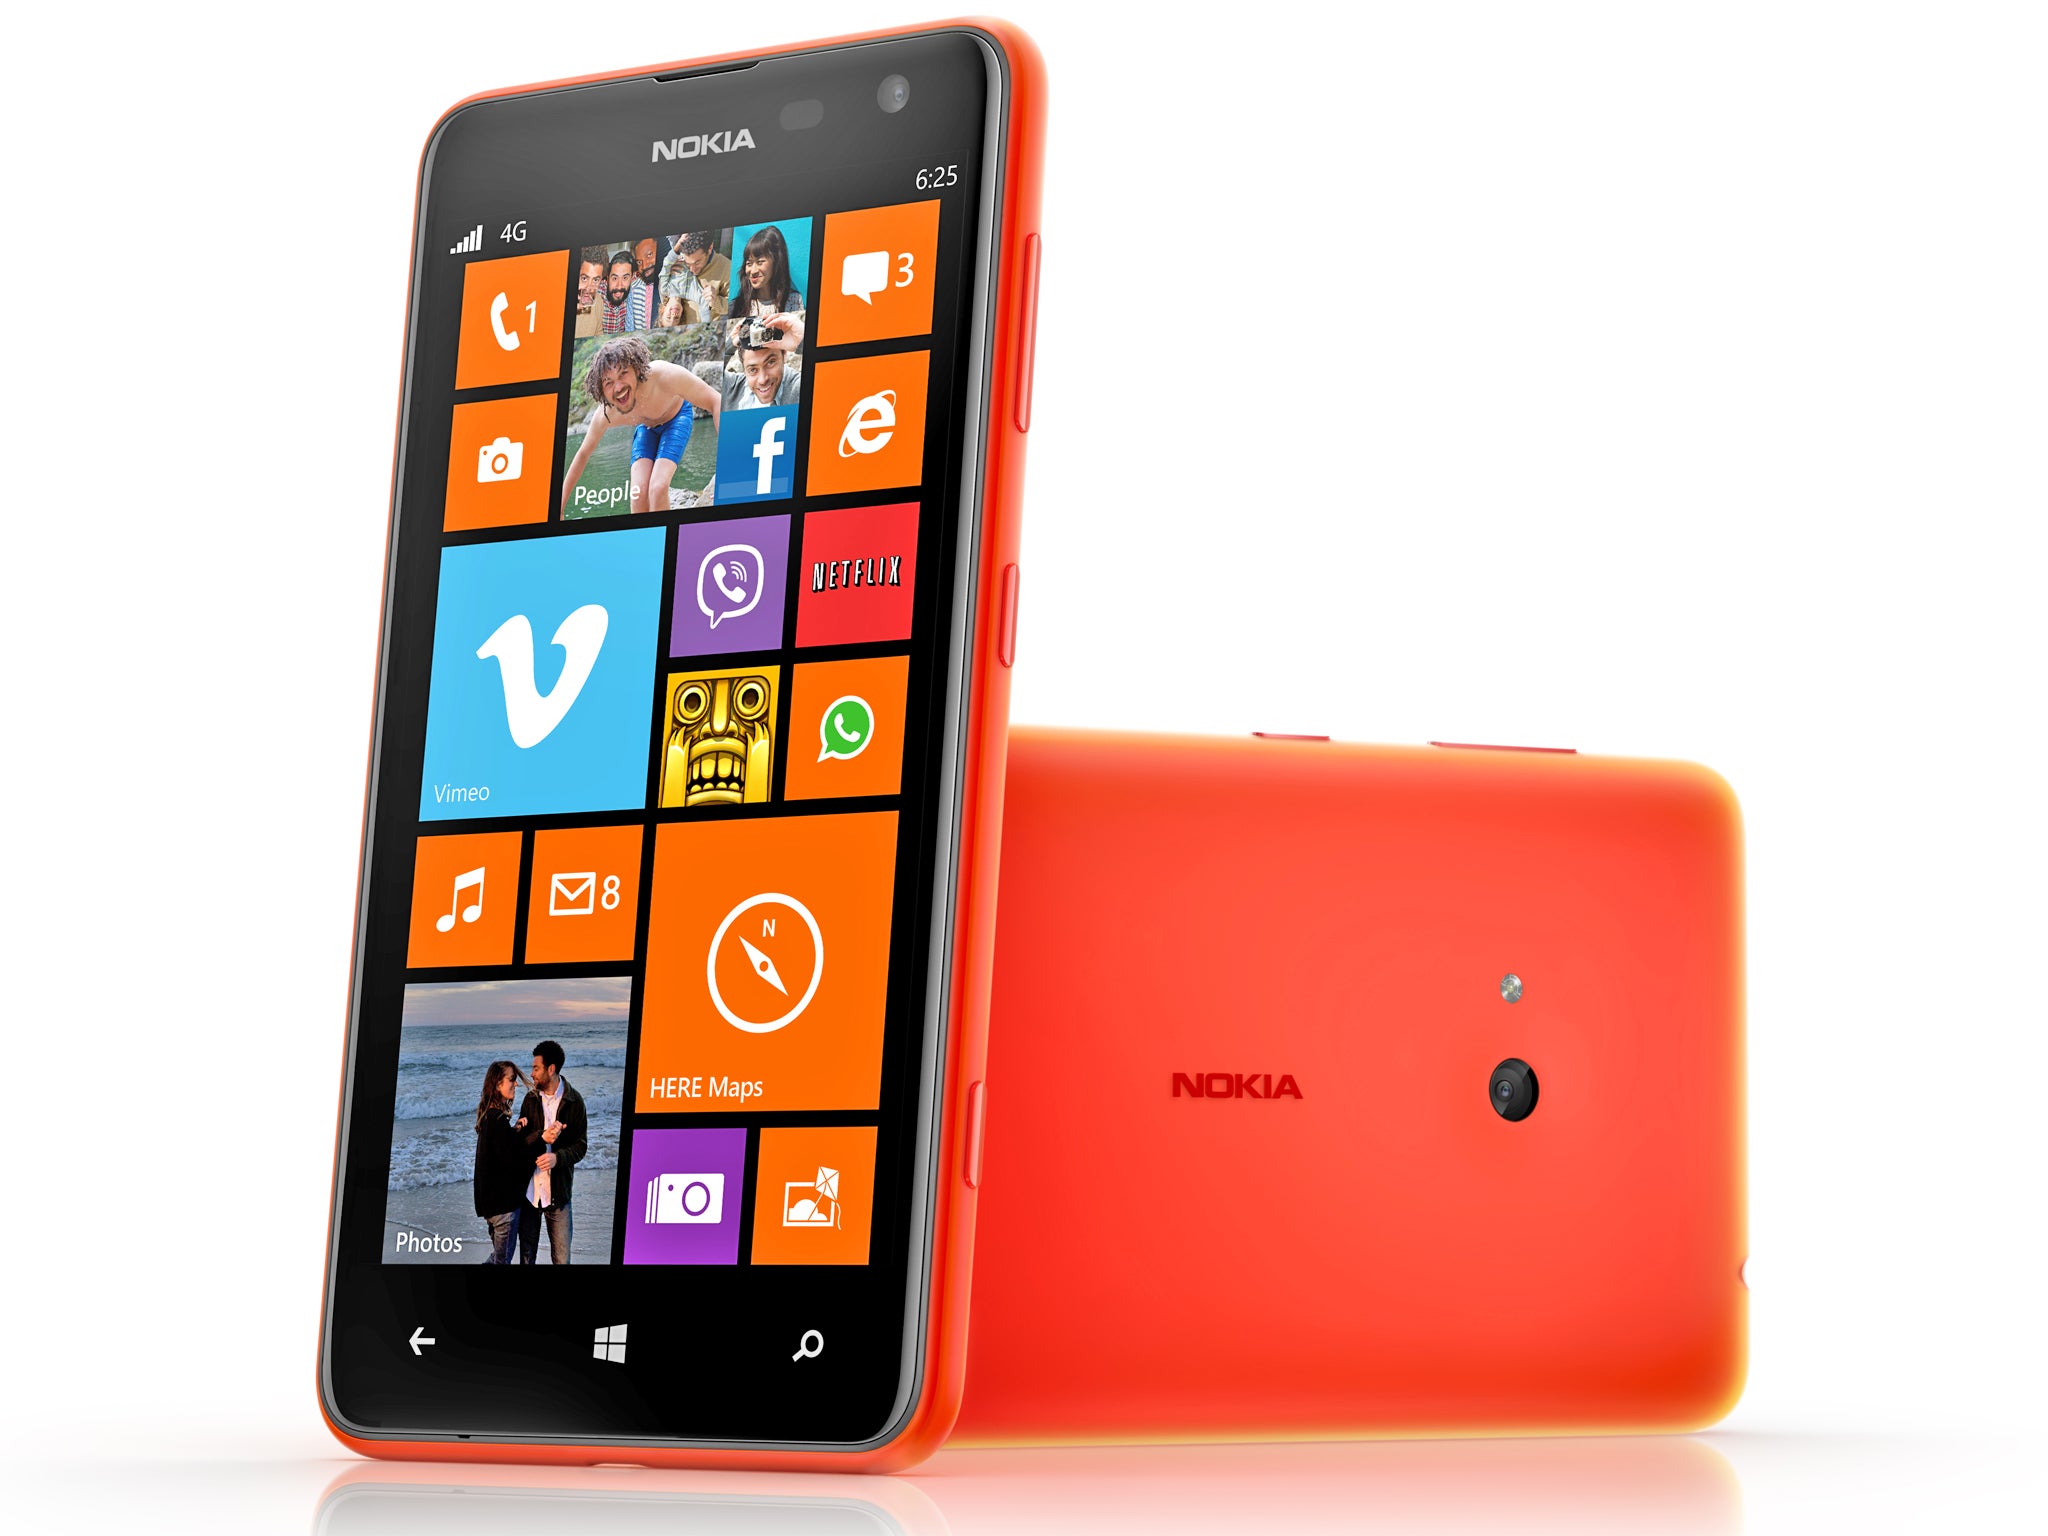 Undeniable charm: the Nokia Lumia